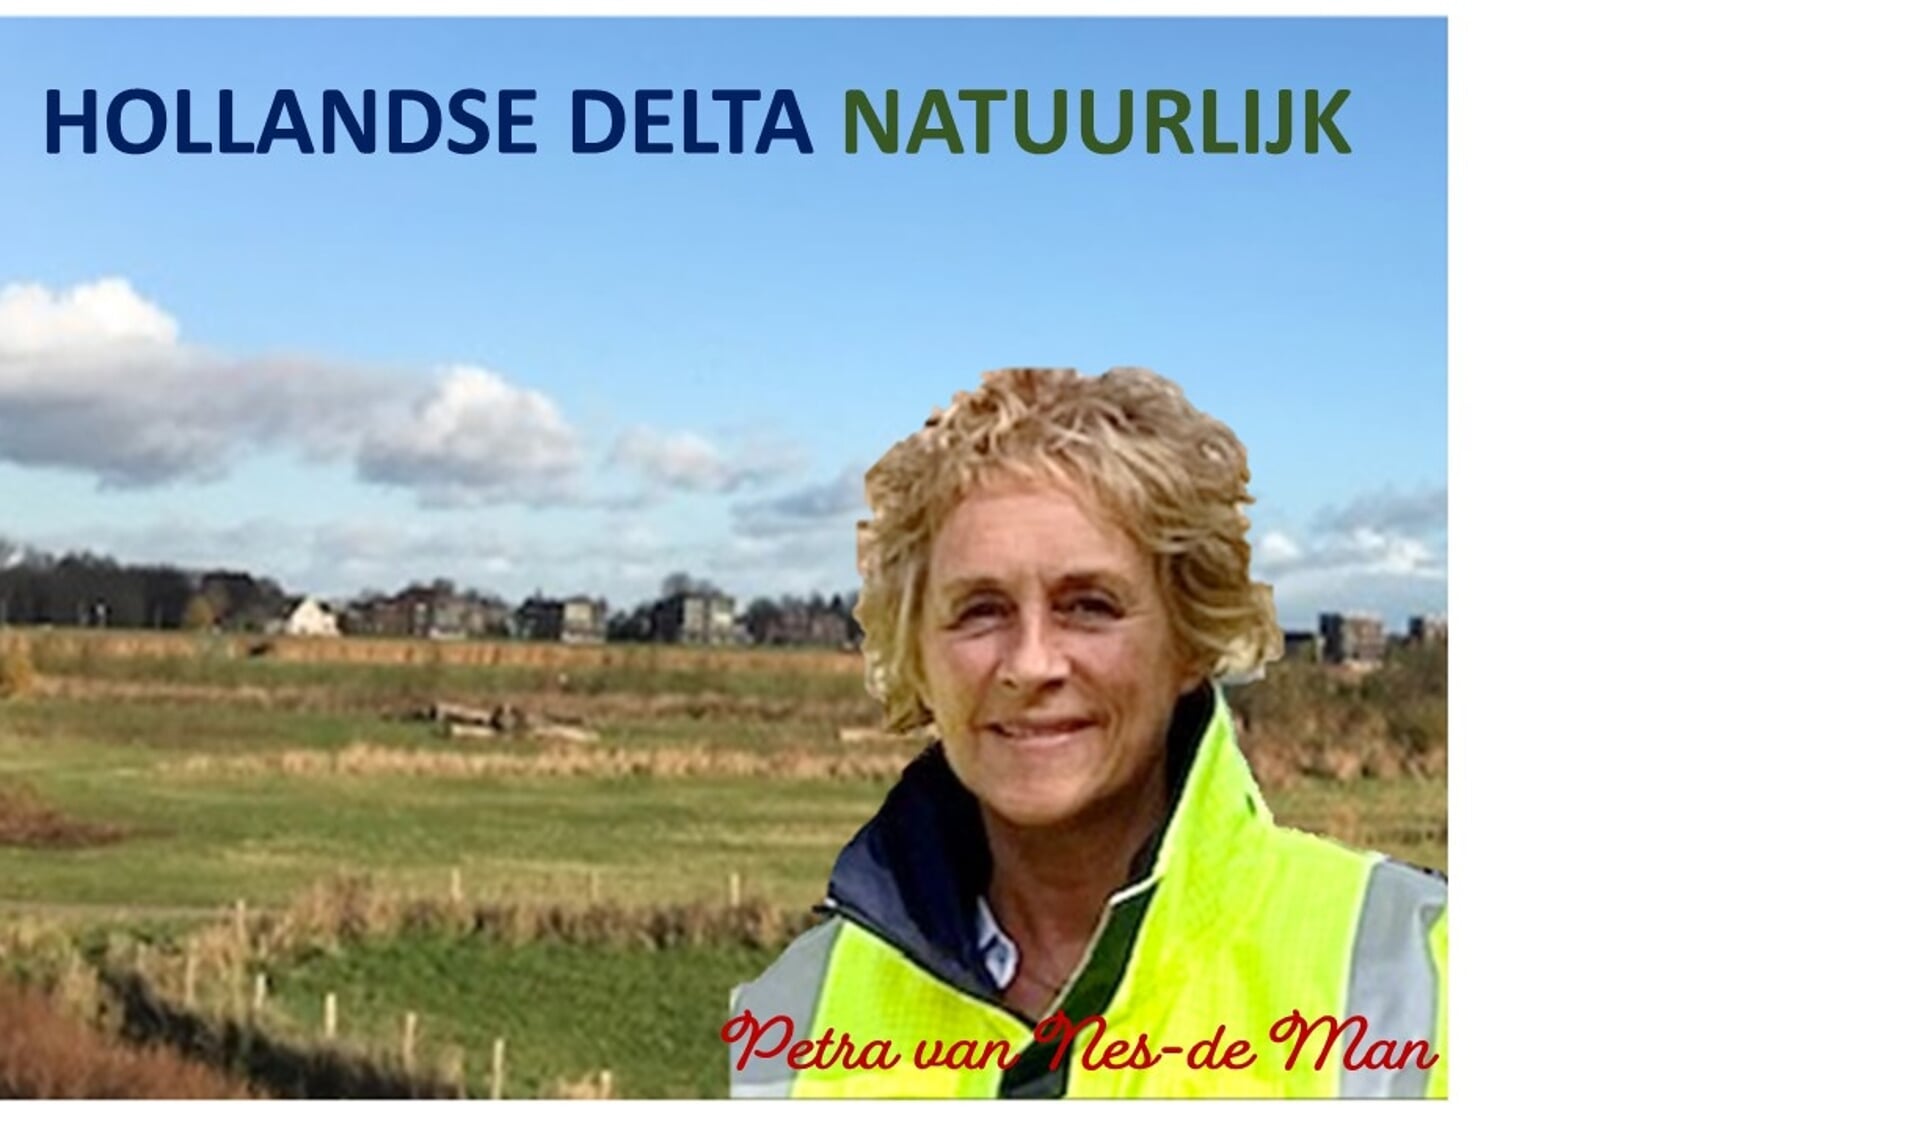 Petra van Nes-de Man heeft 8 jaar ervaring bij het waterschap. 